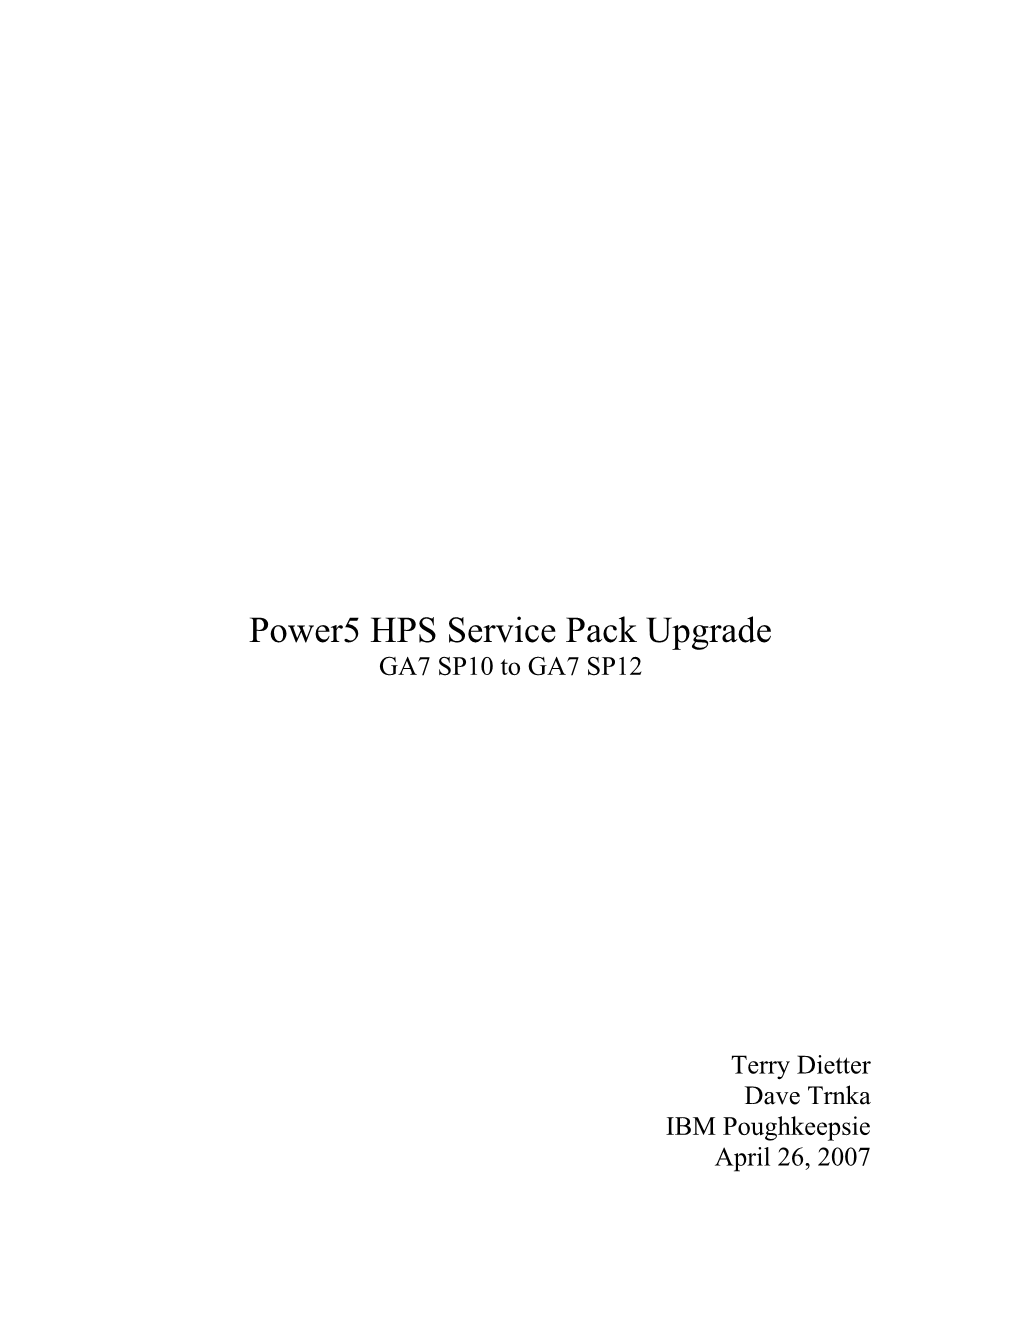 Cluster Service Pack Upgrade